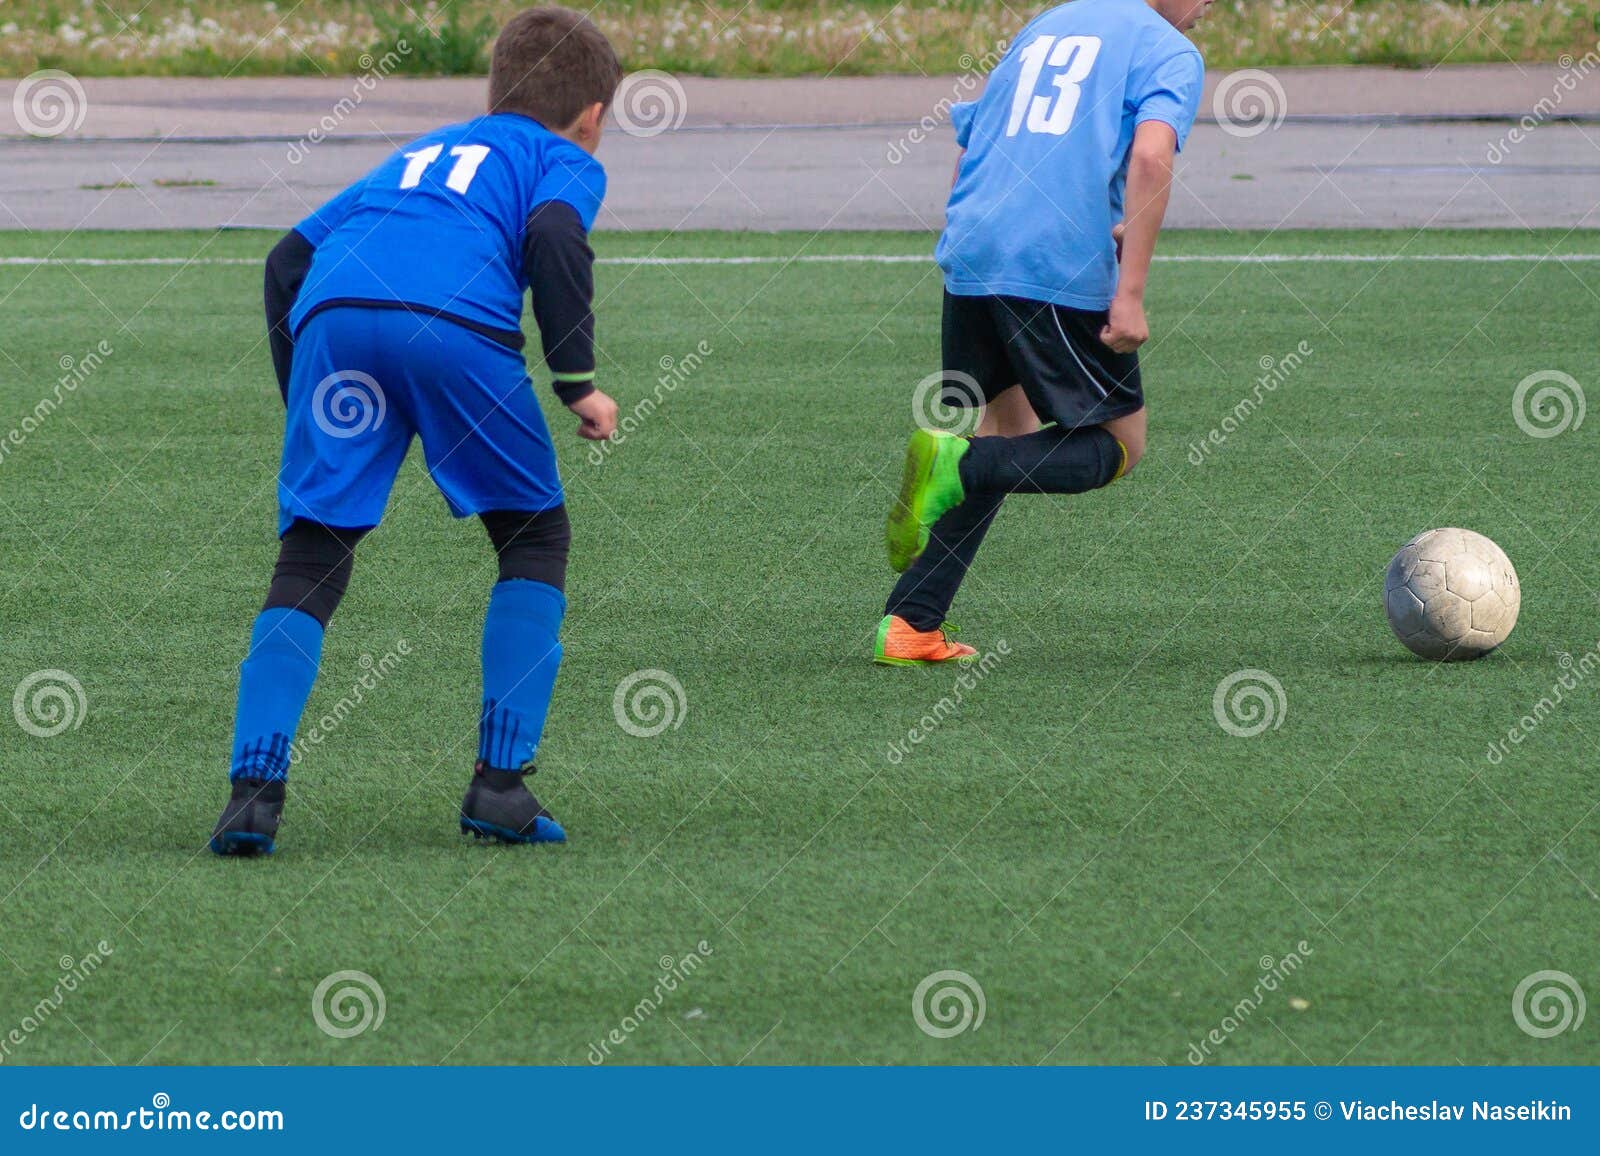 Futebol Infantil. As Crianças Estão Jogando Futebol. A Luta Ativa